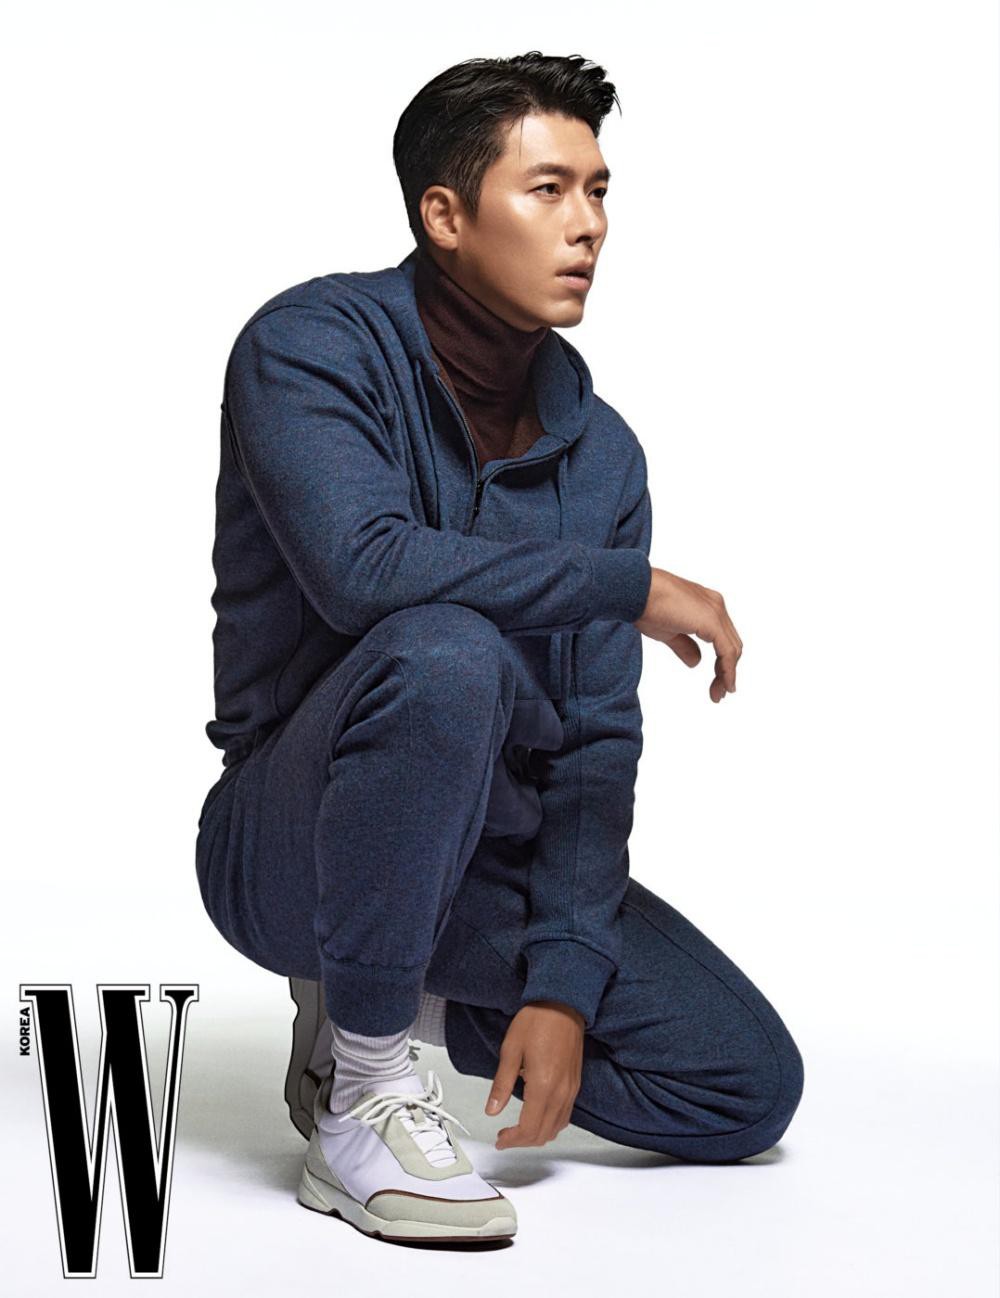 Xuất hiện trên tạp chí thời trang W, Hyun Bin diện trang phục của Loro Piana, nhãn hàng mà anh làm người mẫu đại diện. Các trang phục anh mặc nằm trong BST Thu Đông 2021 của hãng.